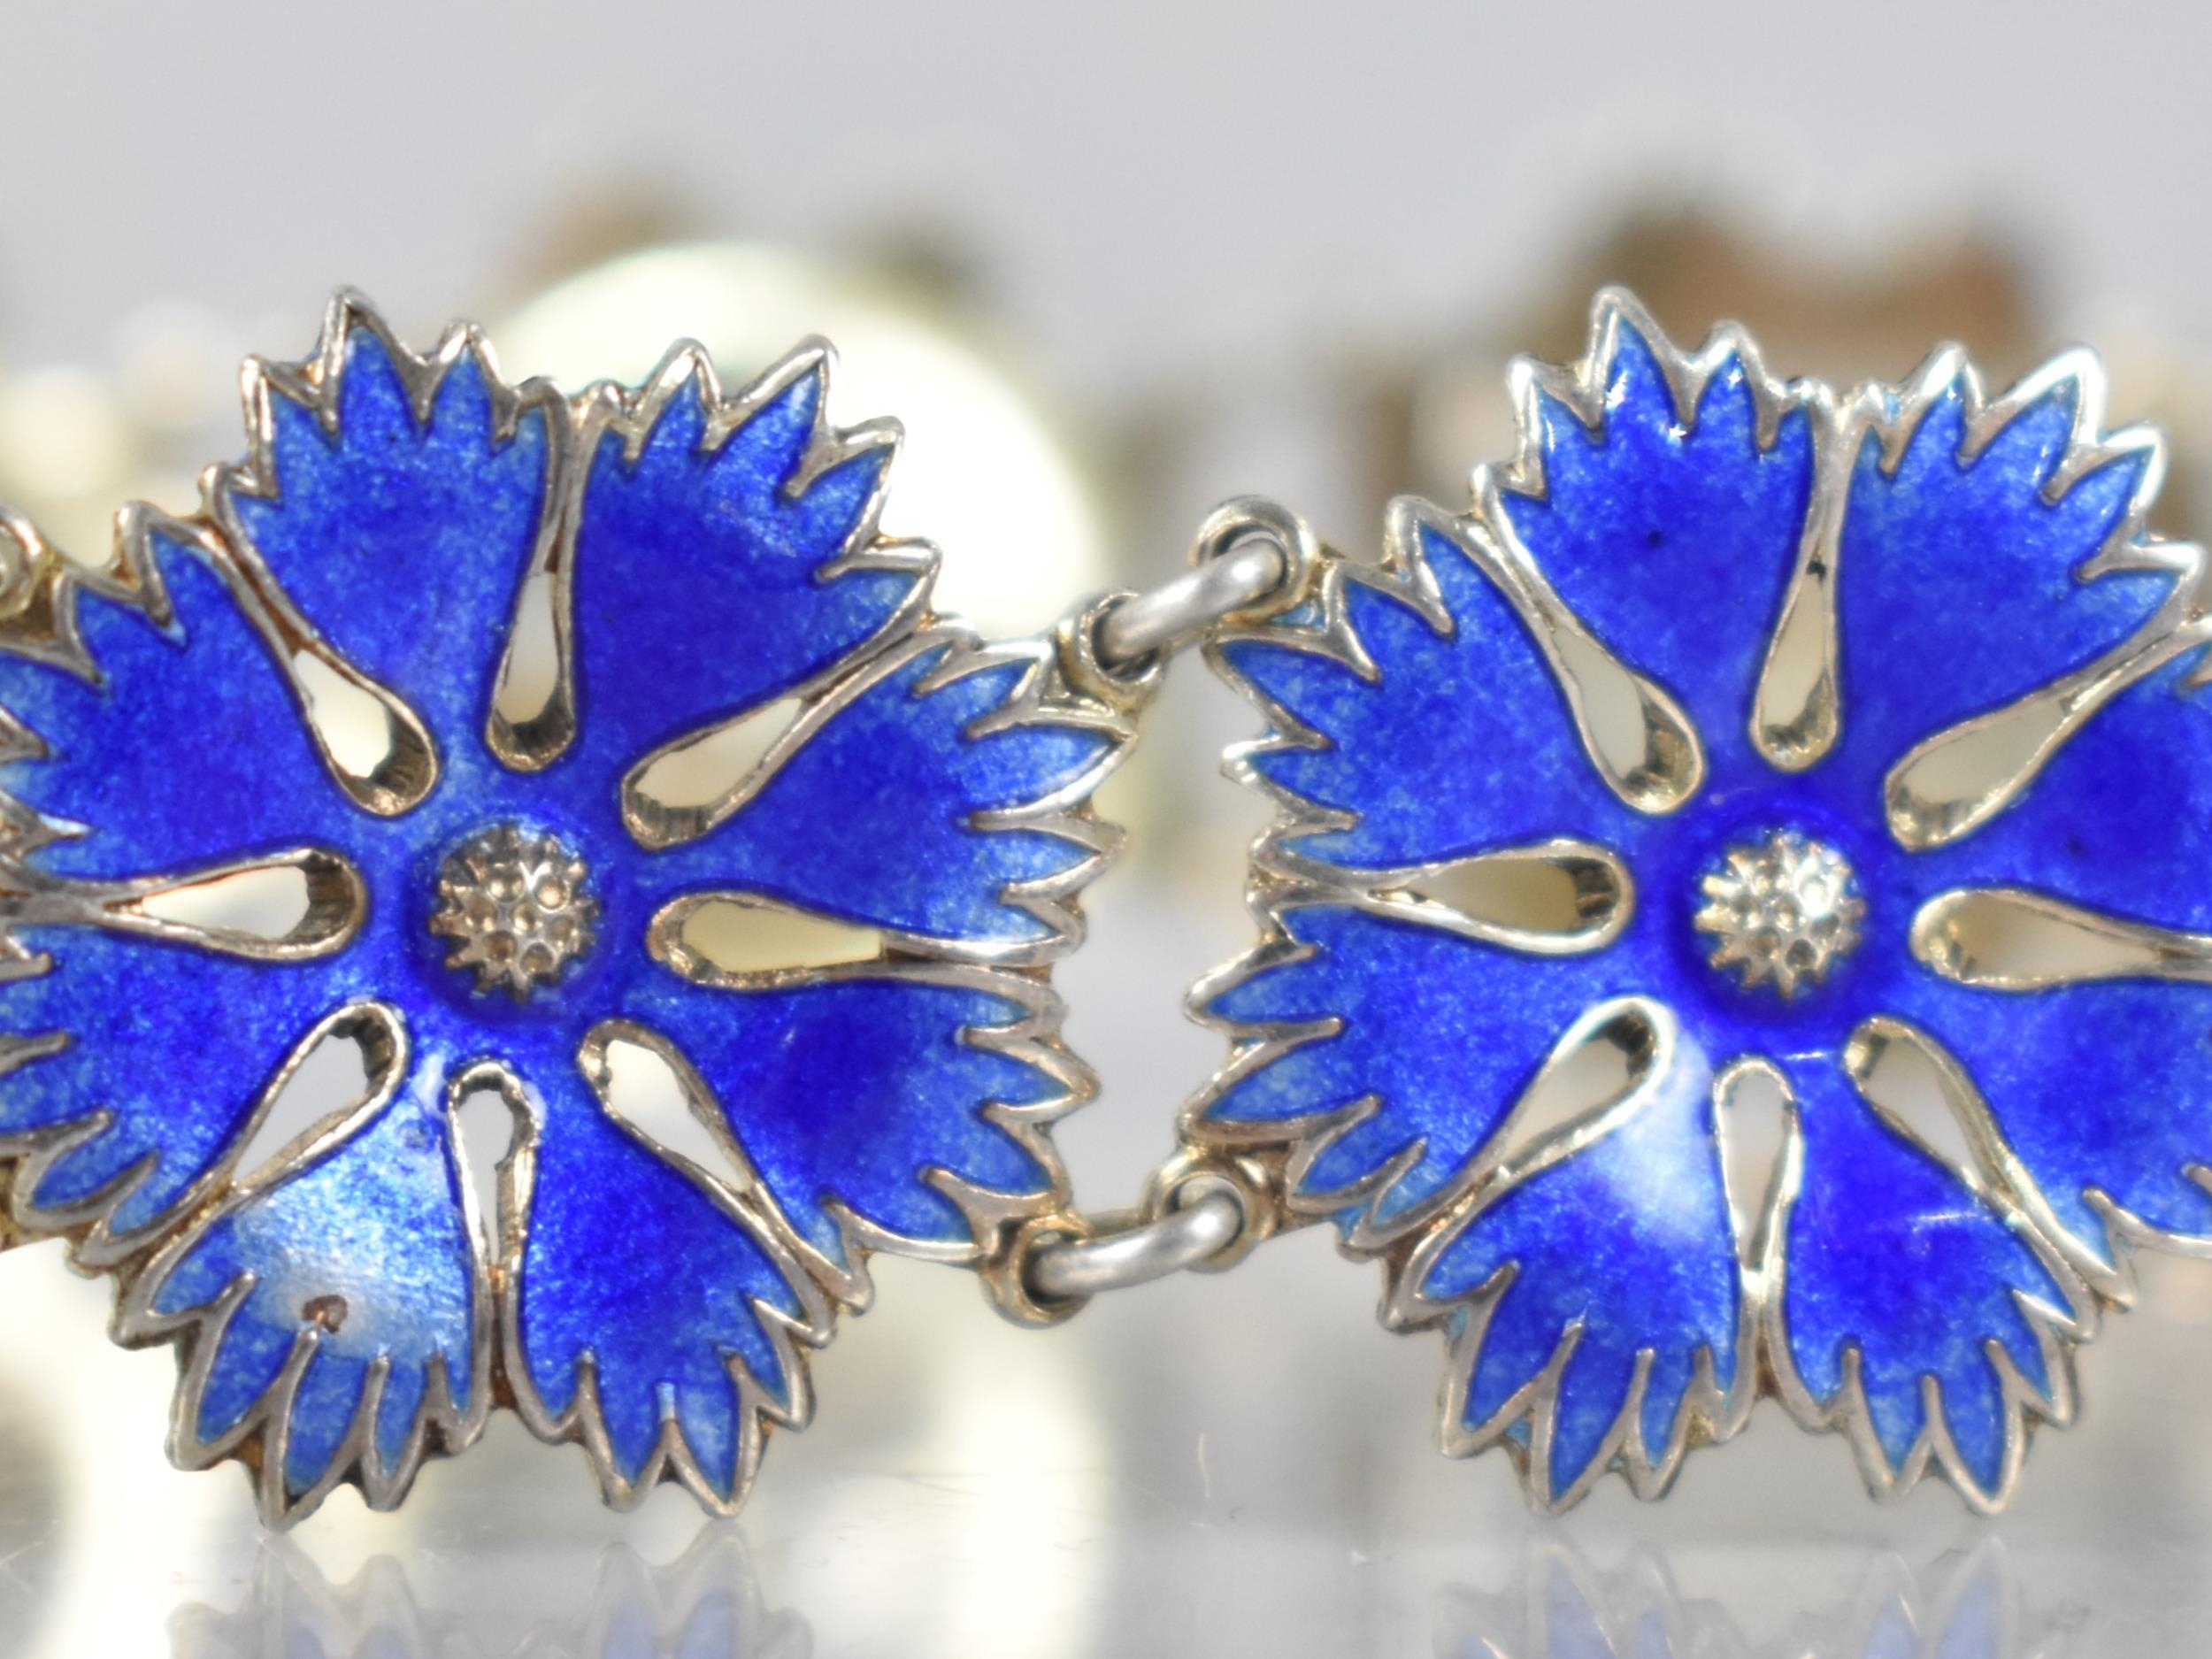 Bernard Hertz: A Danish Silver and Blue Enamelled Panelled Floral Bracelet, Nine Panels - Image 3 of 3